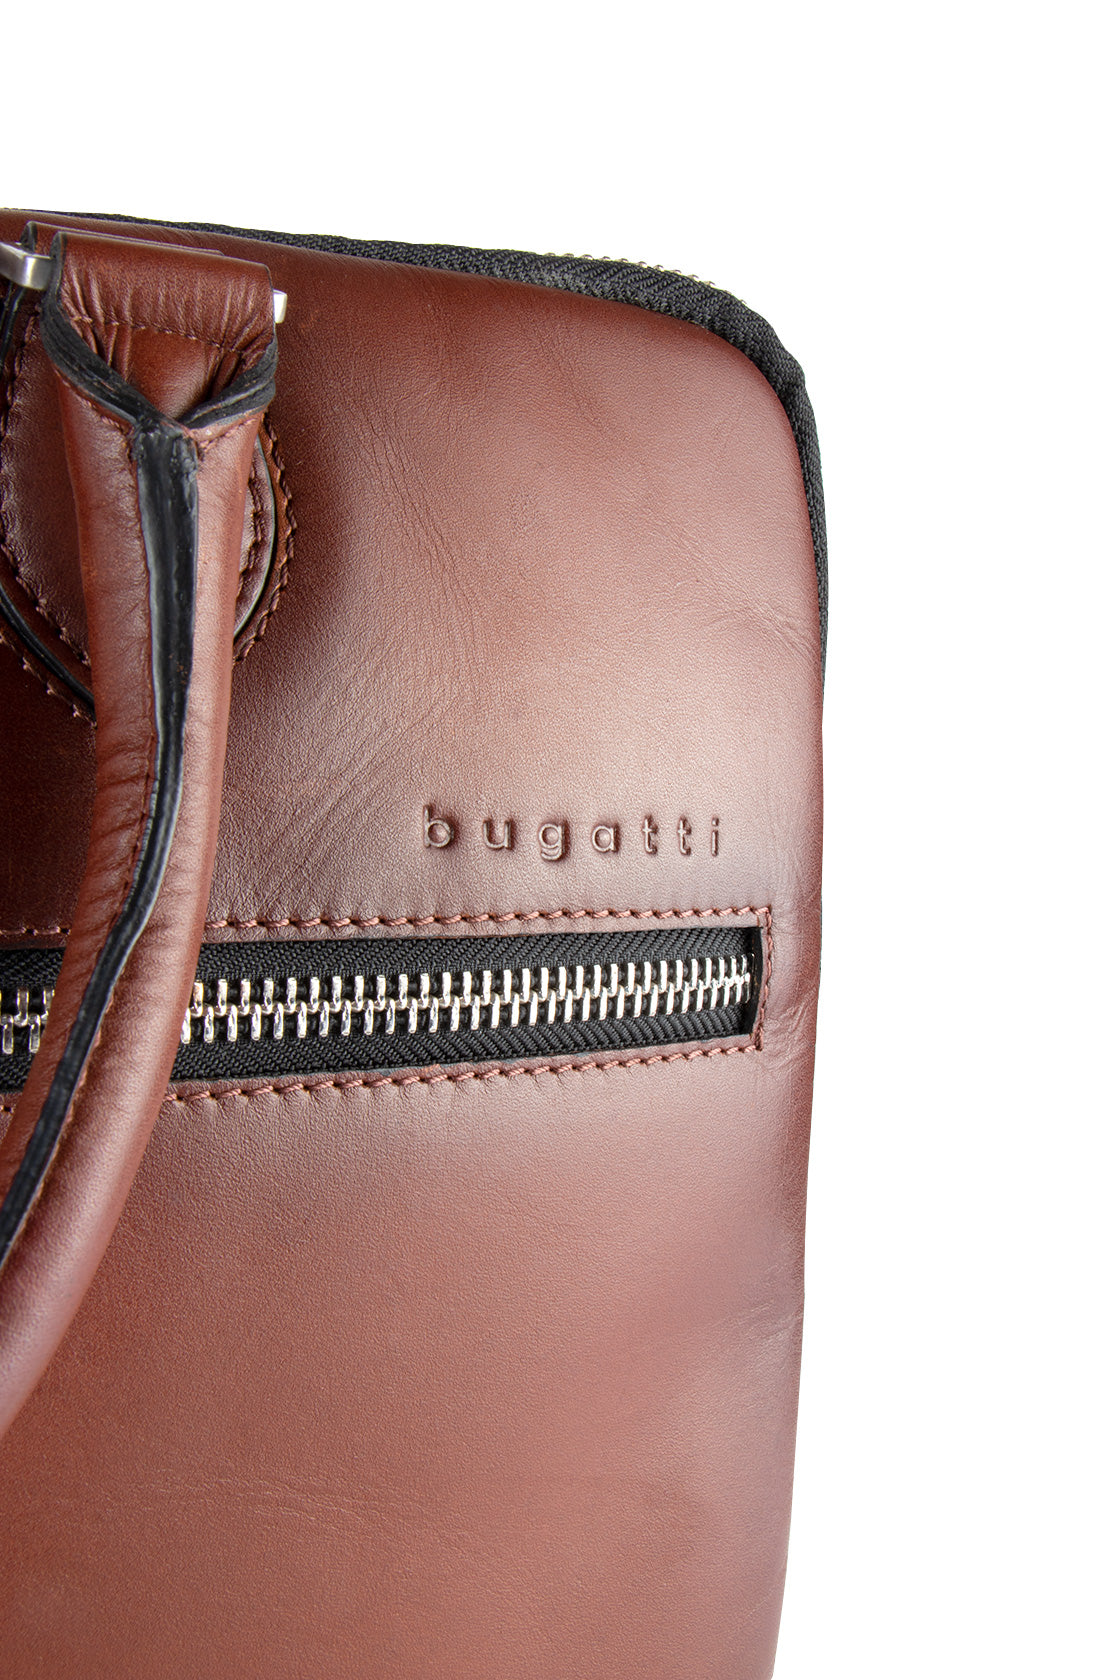 Bugatti Domus Briefcase Cognac